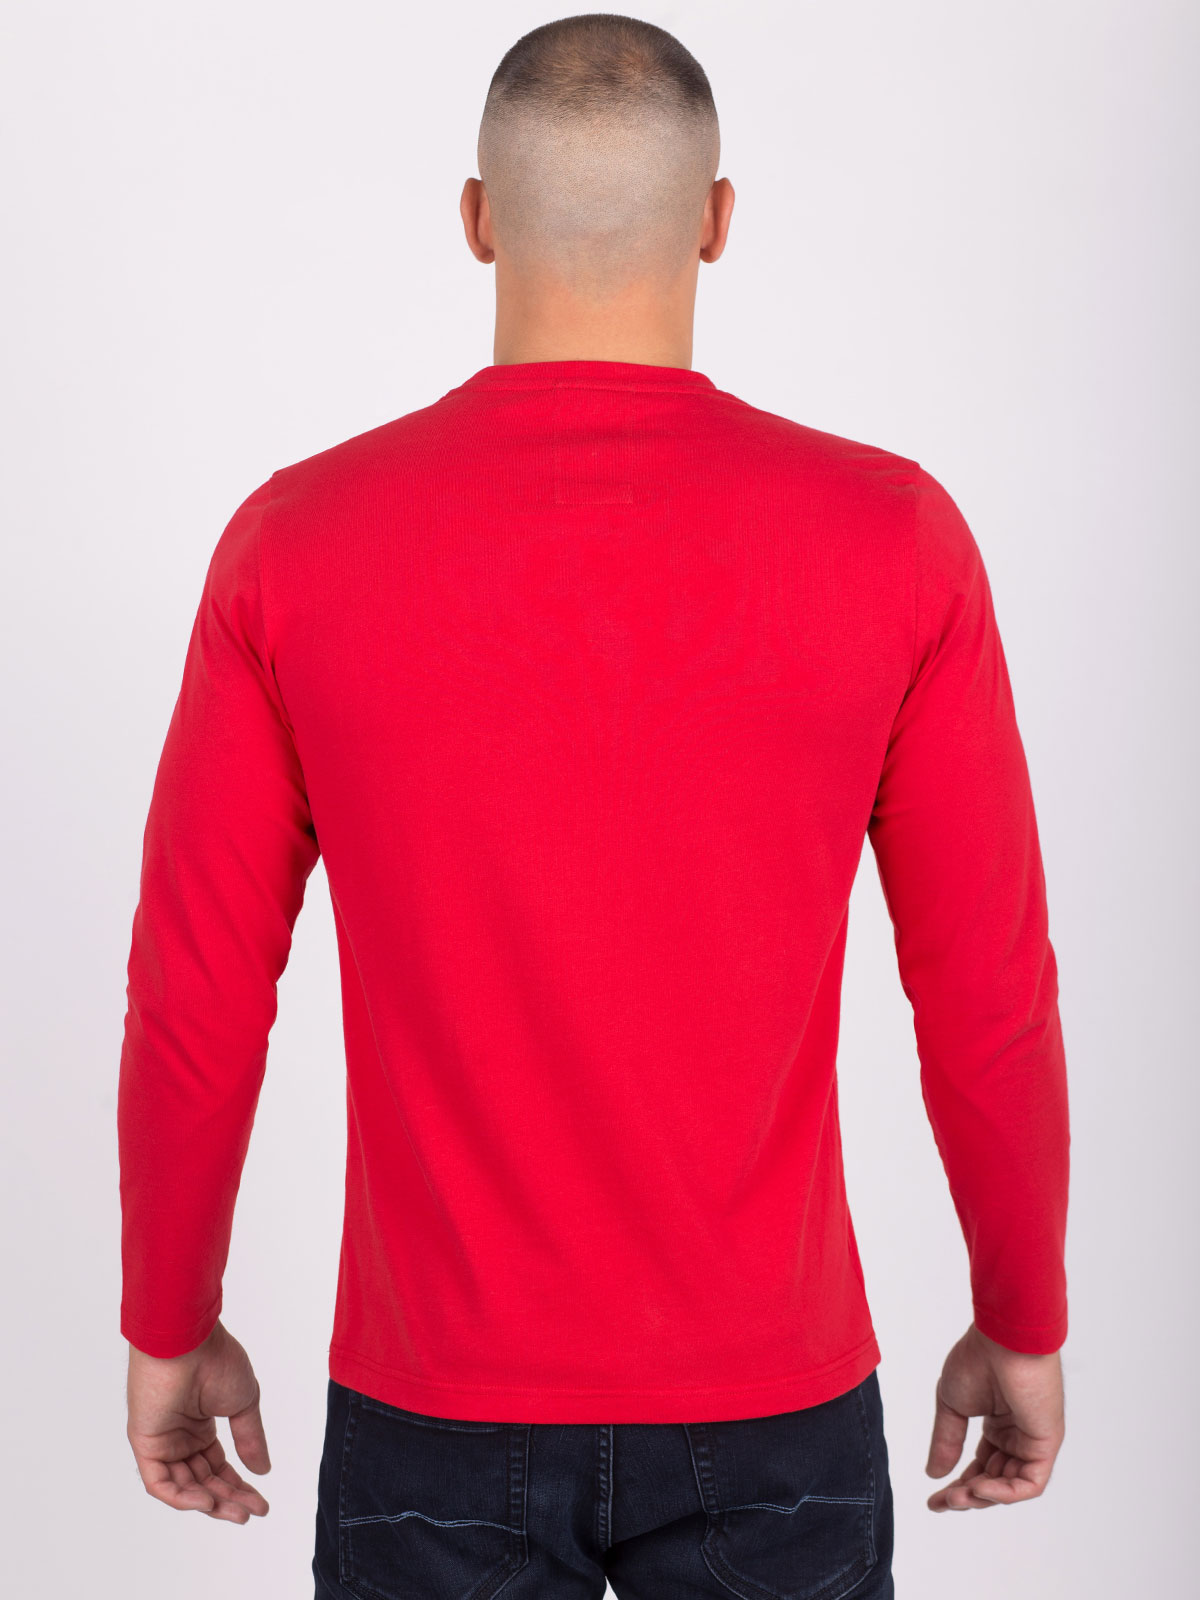 Κόκκινη μπλούζα με στάμπα cherty - 42336 € 16.31 img4